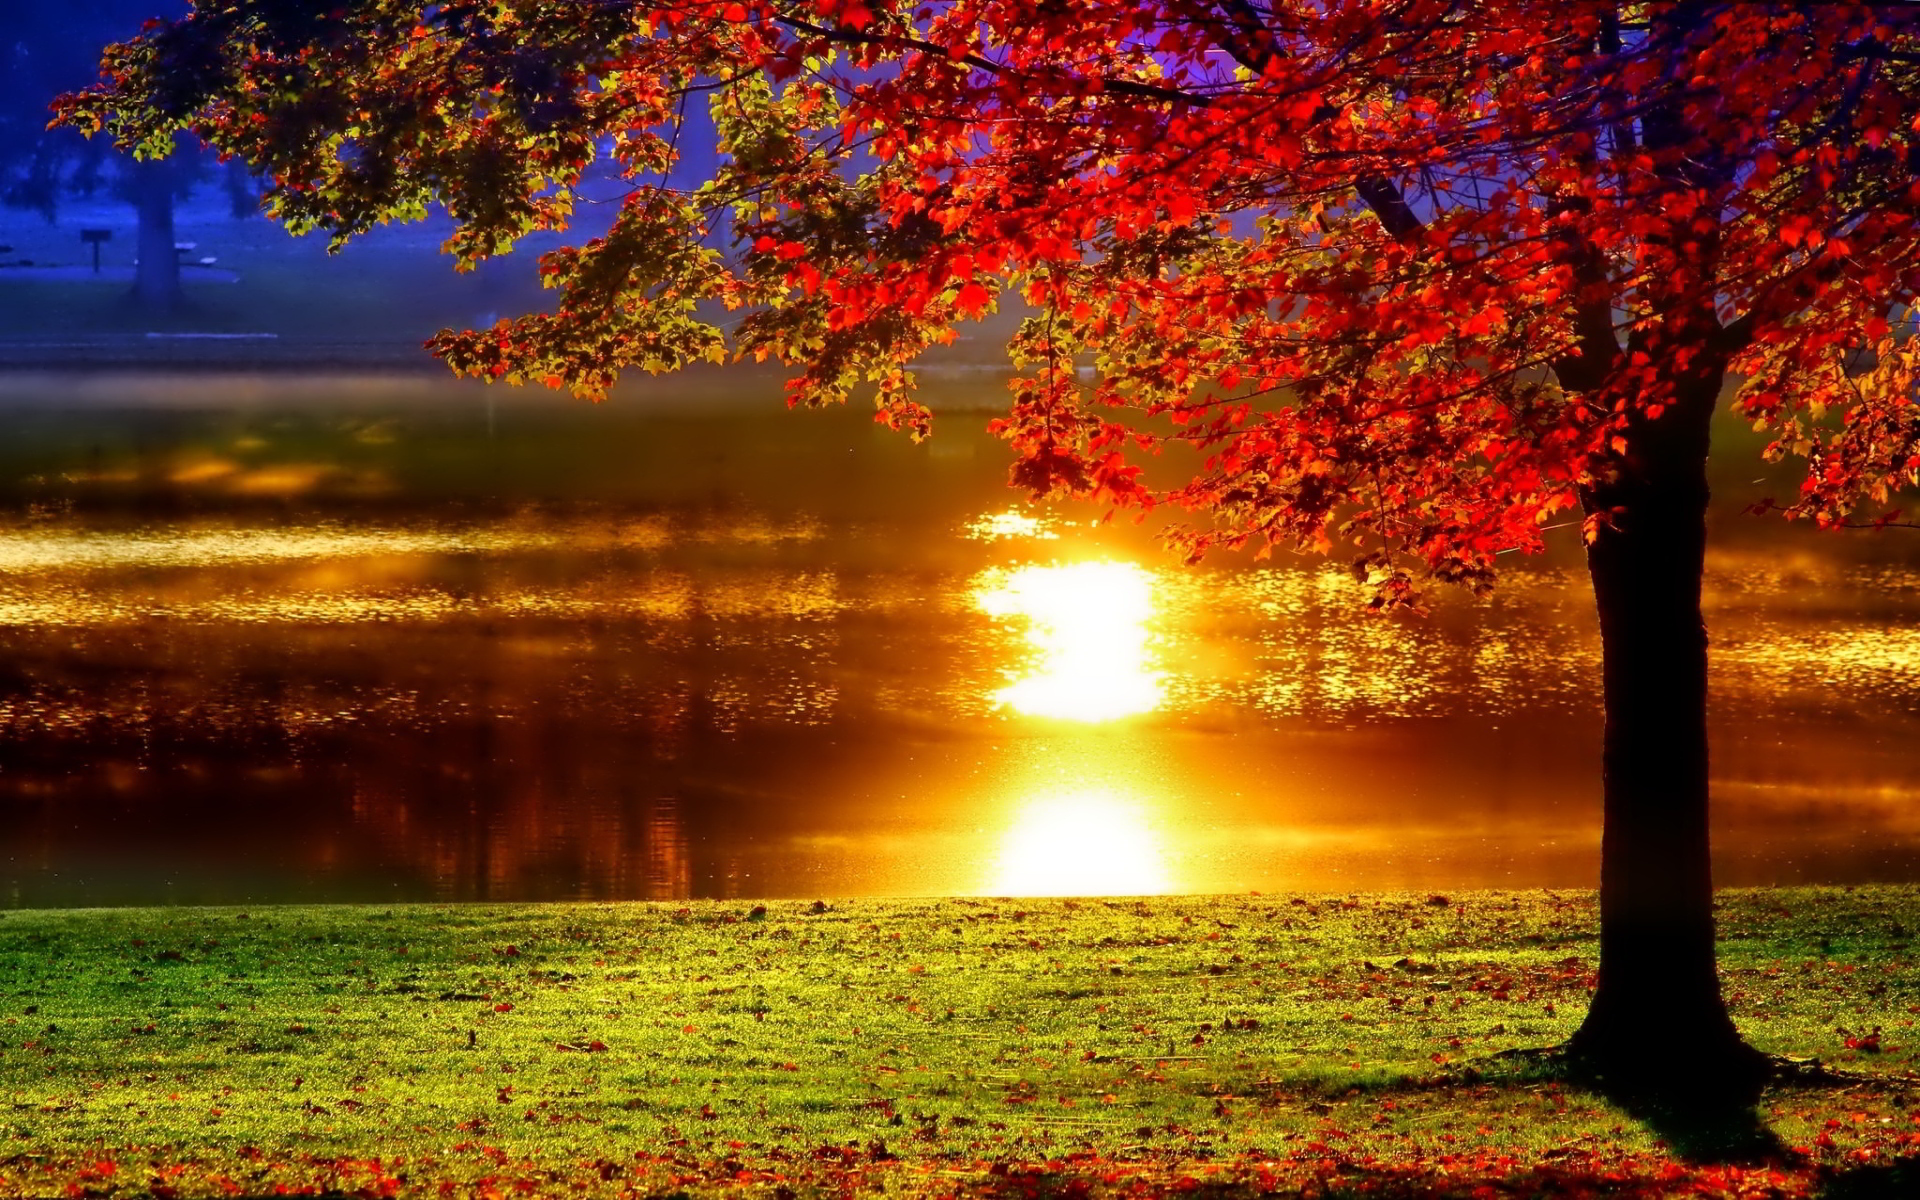 Lakeside sunset reflection